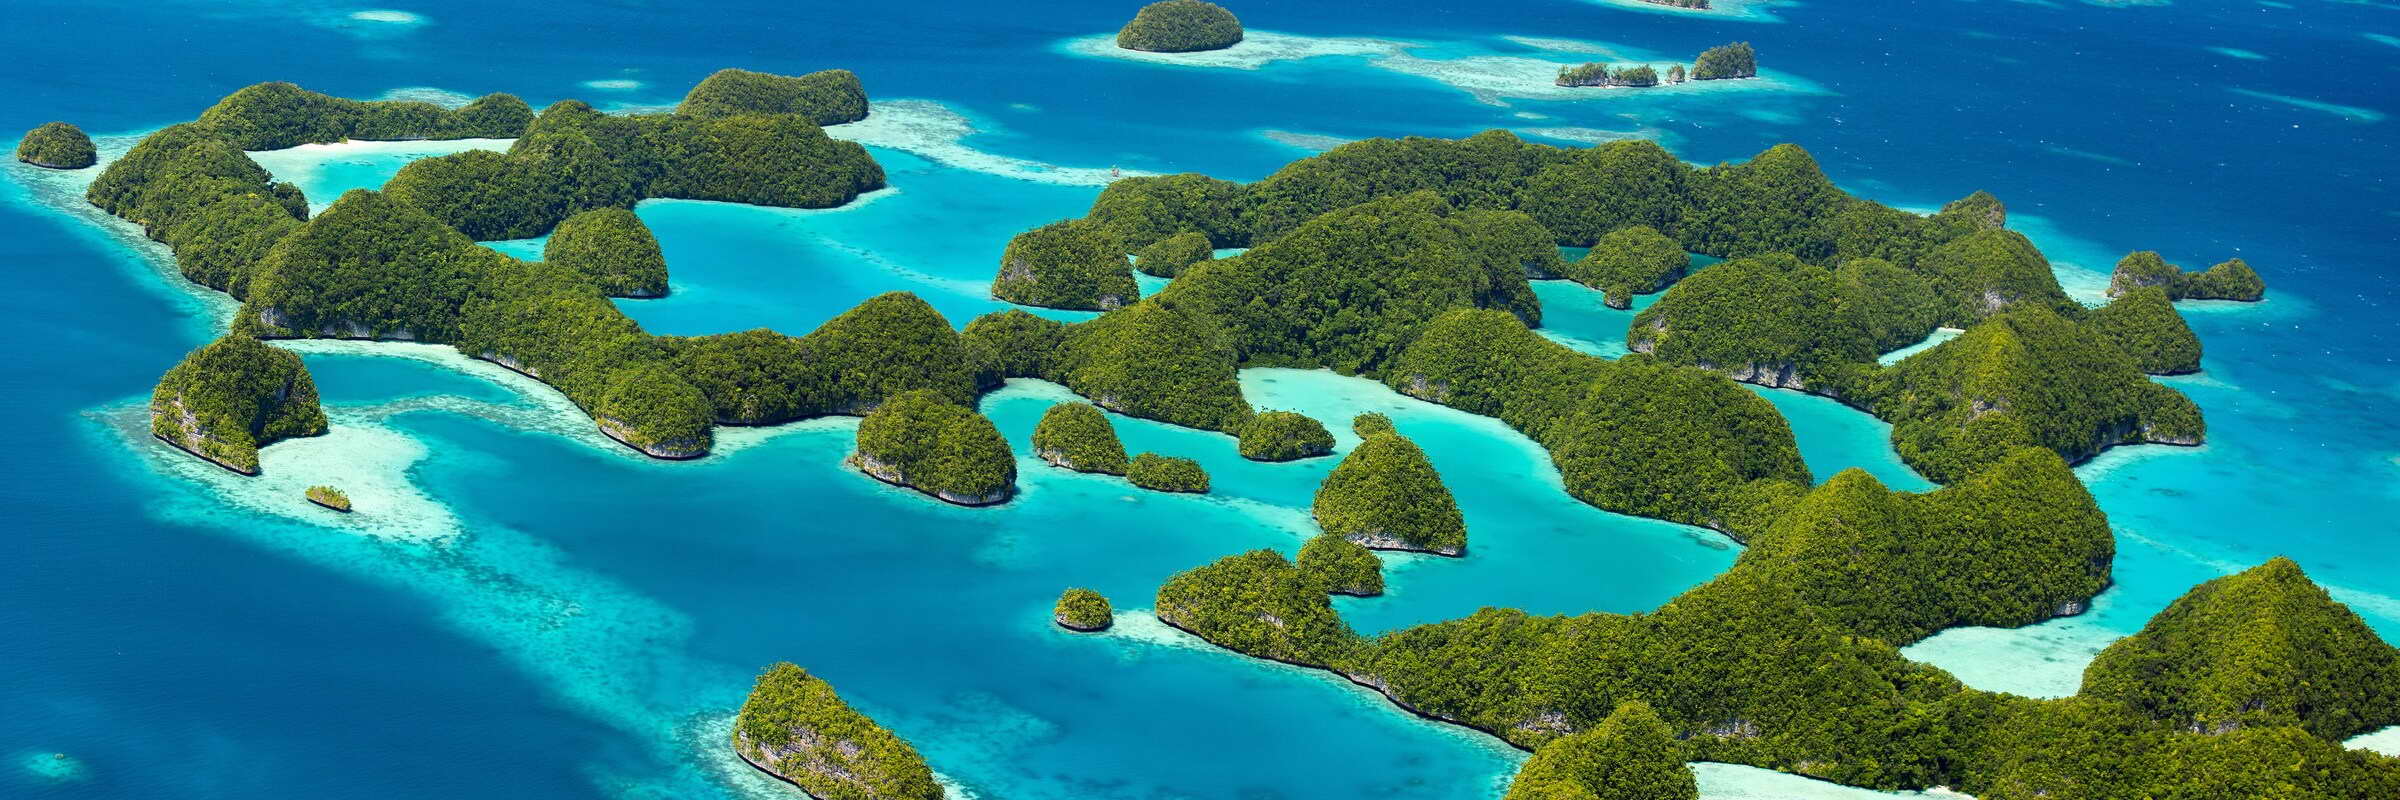 Die Rock Islands in Palau sind eine Inselgruppe im Westpazifik, die vor allem unter Tauchern sehr beliebt ist.